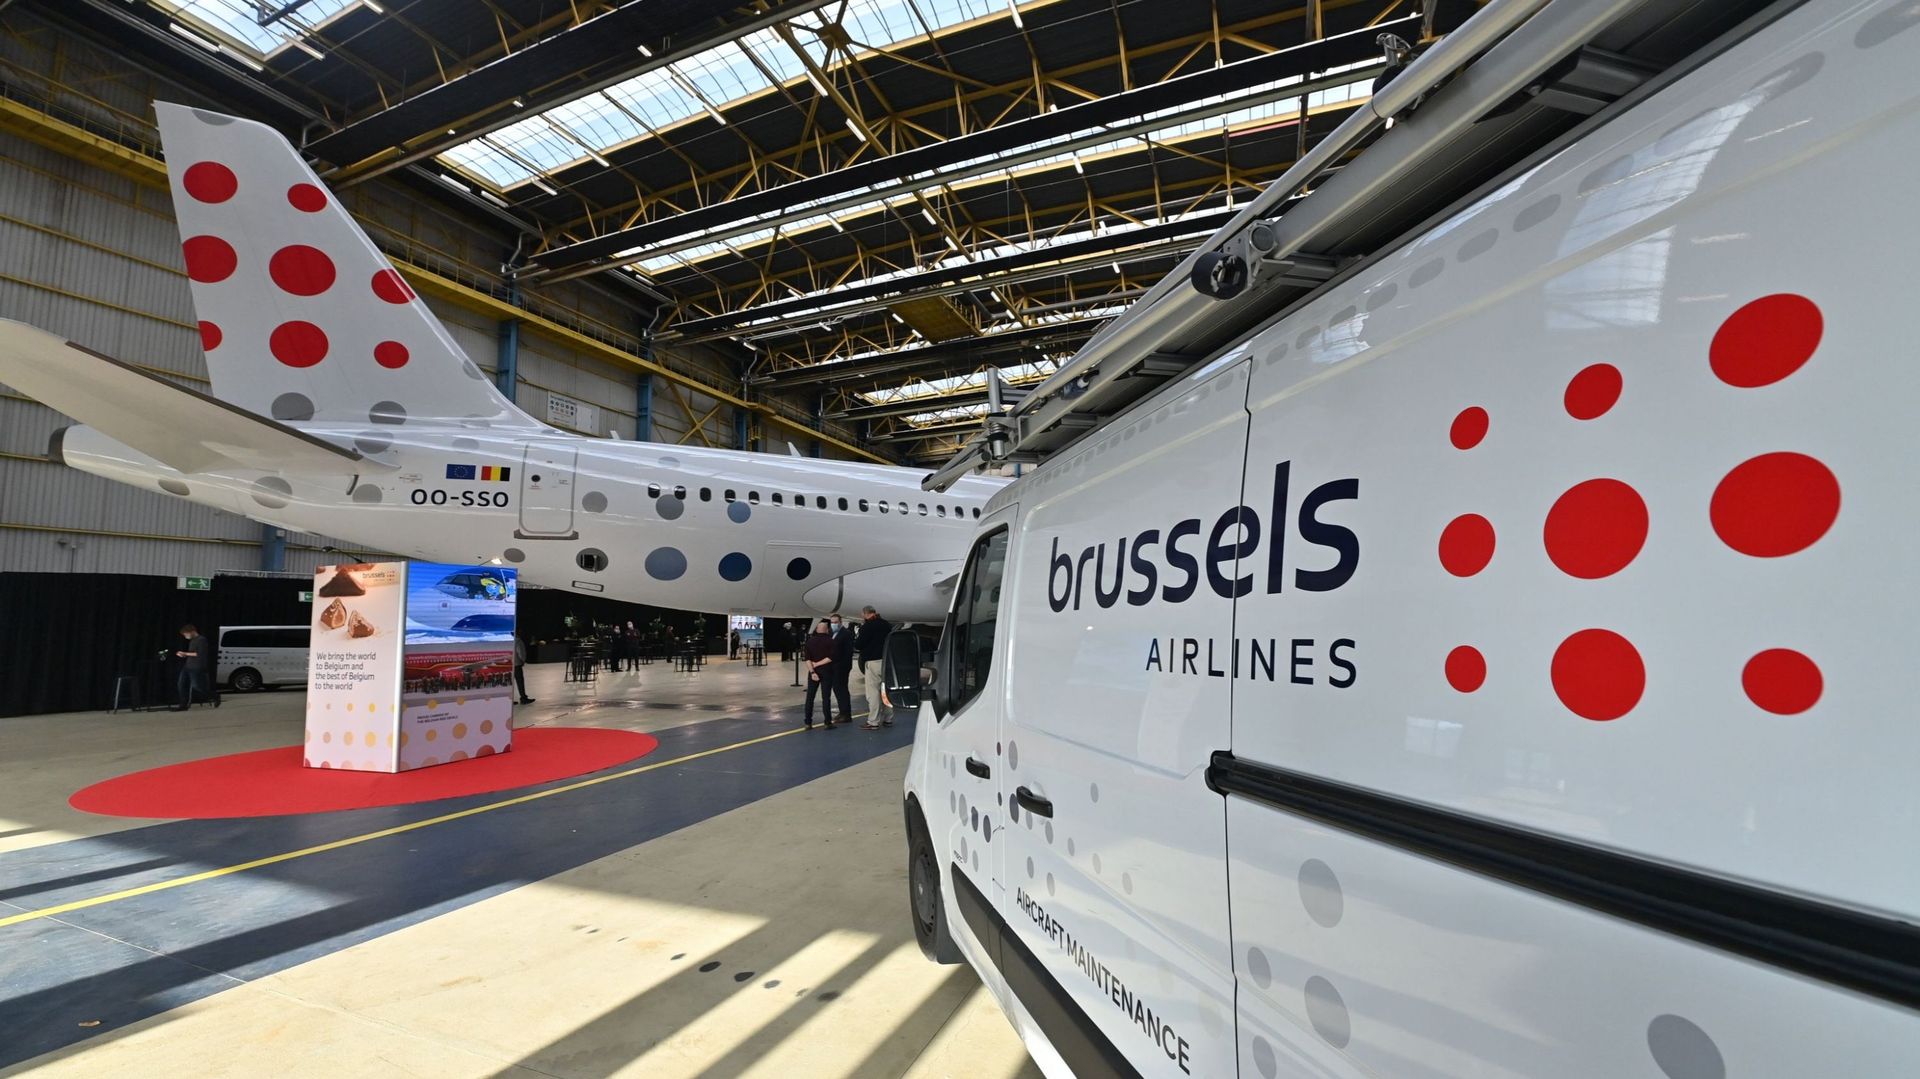 Le nouveau logo de Brussels Airlines